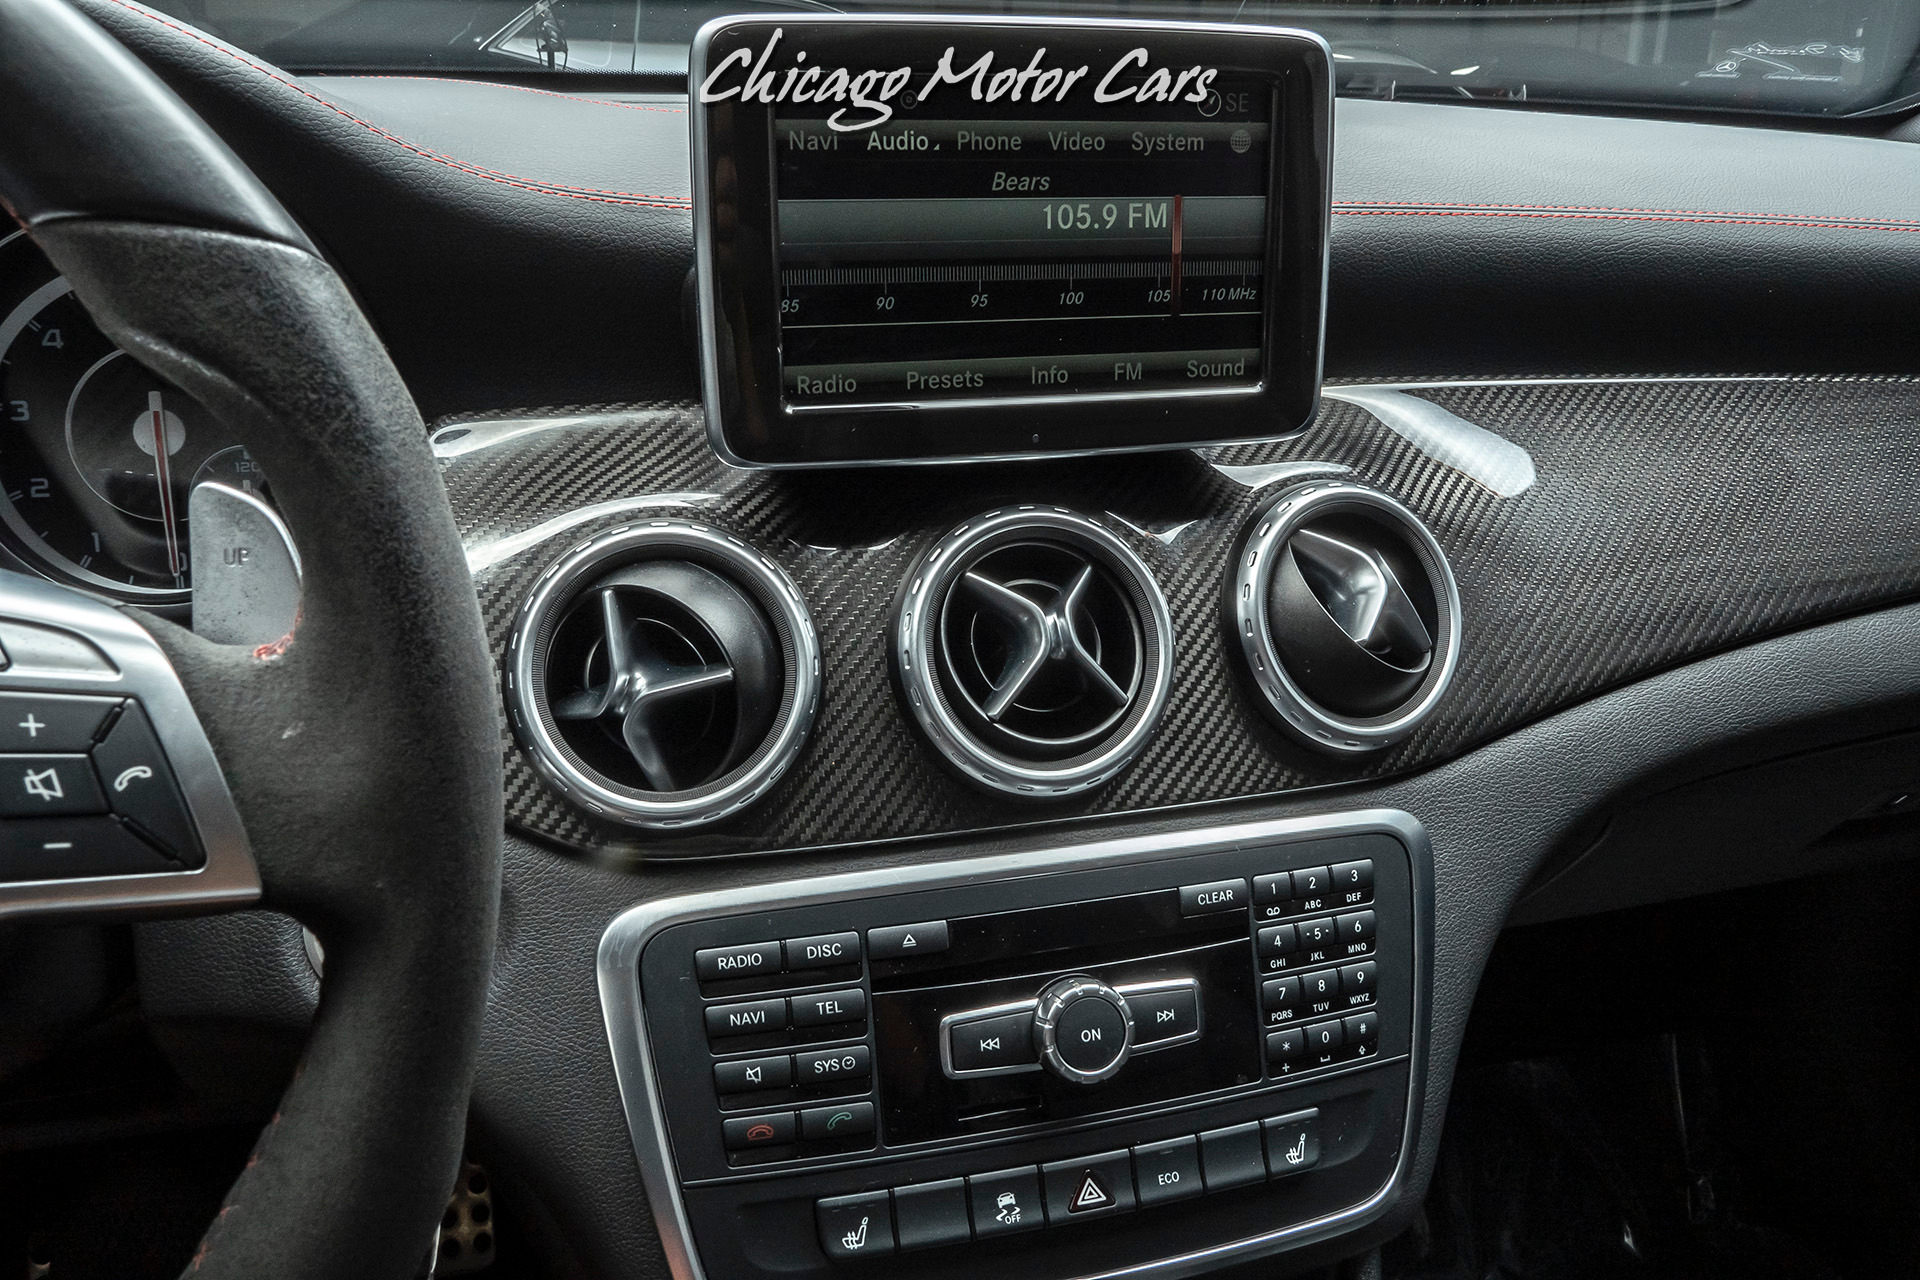 Used-2015-Mercedes-Benz-GLA-45-AMG-Hatchback-MSRP-64K-LOADED